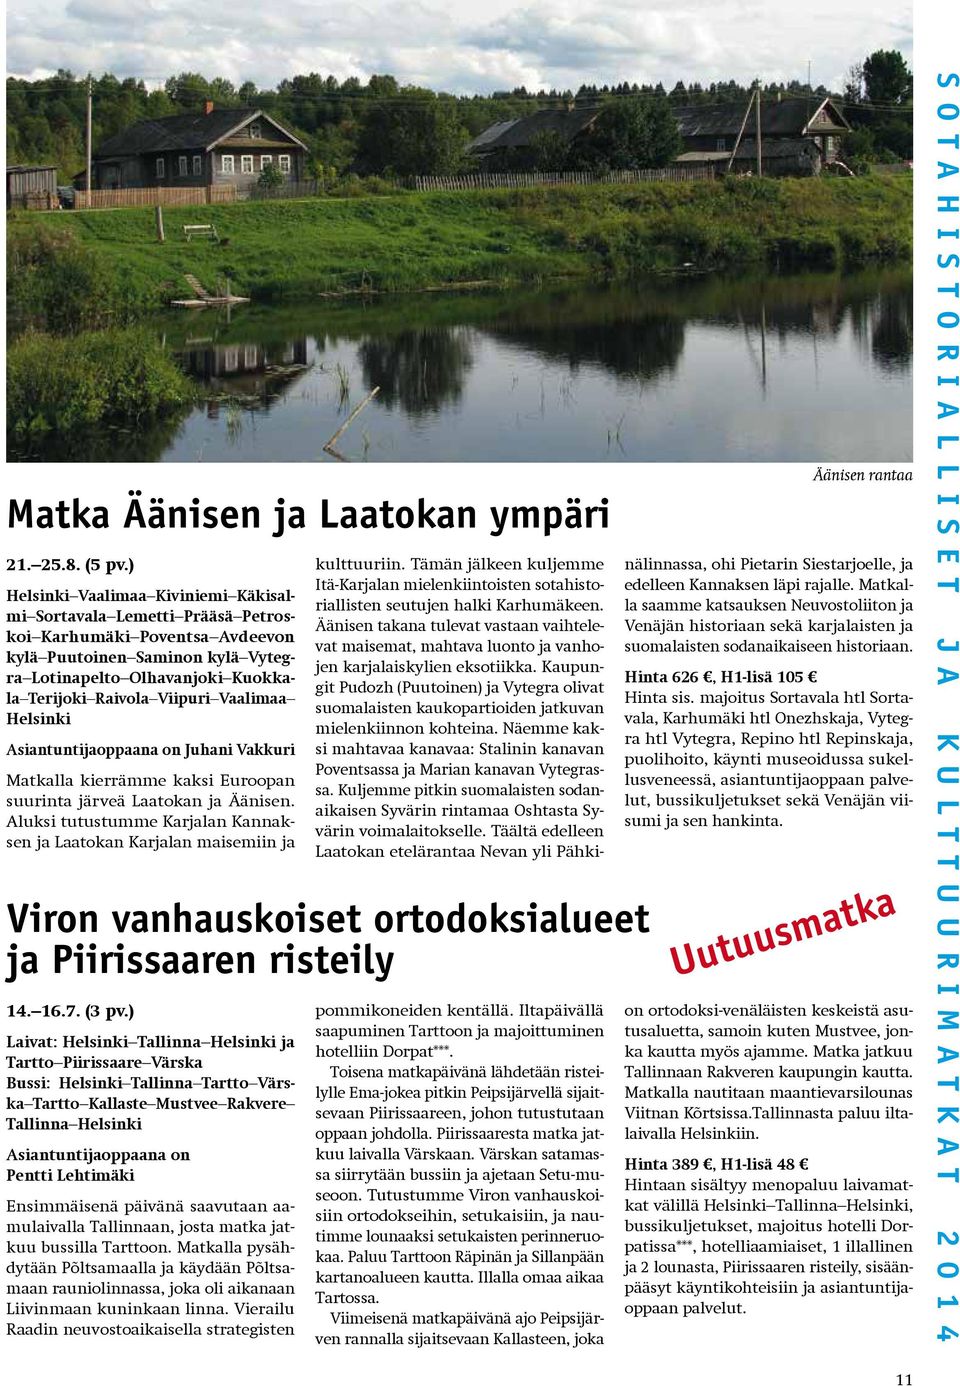 Vaalimaa Helsinki Asiantuntijaoppaana on Juhani Vakkuri Matkalla kierrämme kaksi Euroopan suurinta järveä Laatokan ja Äänisen.